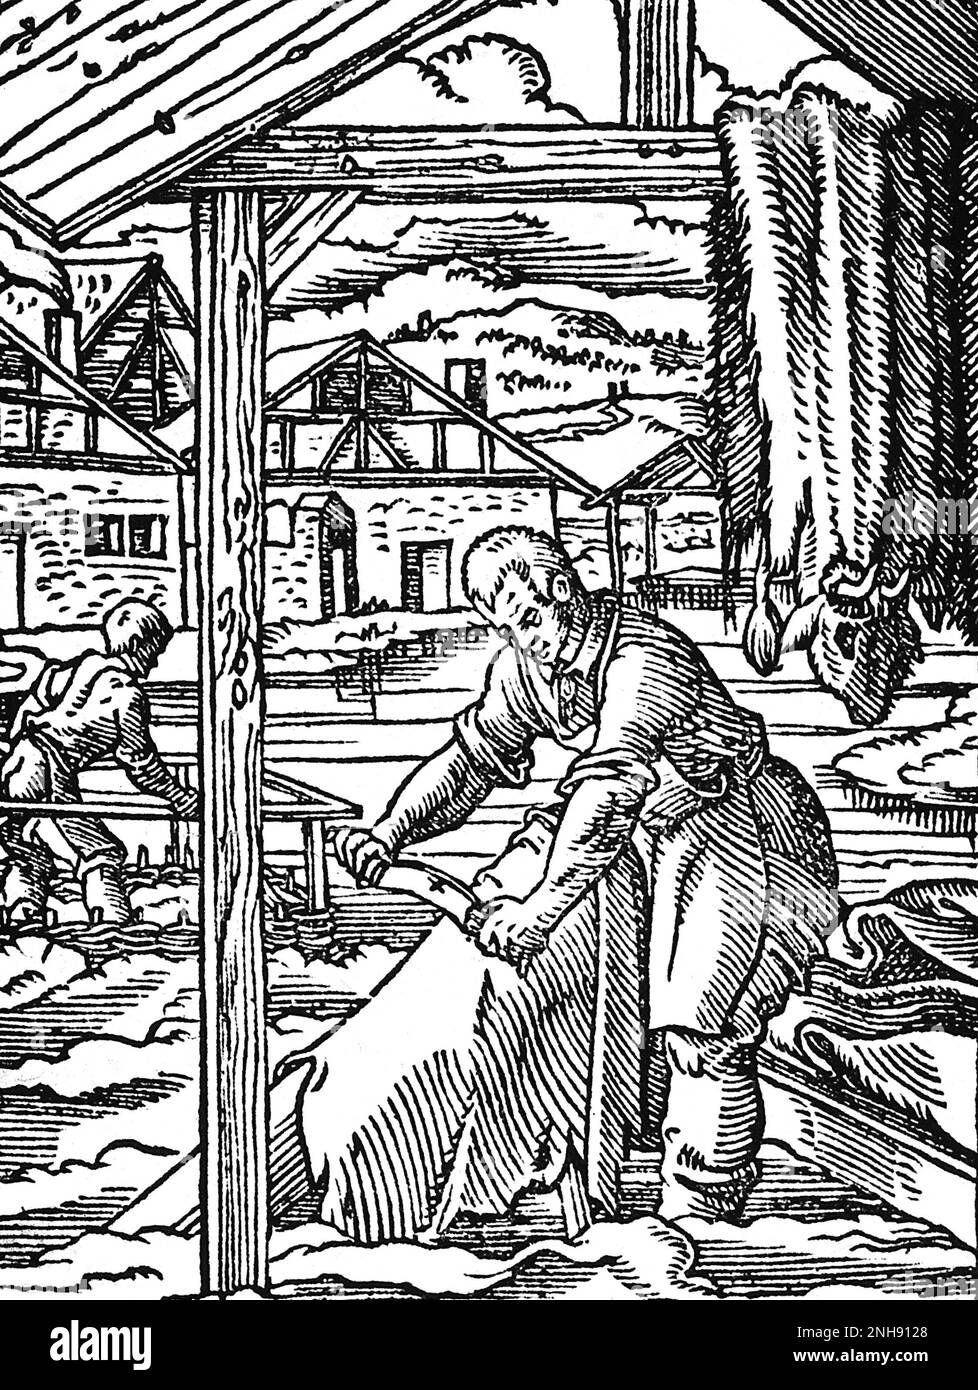 Un teneur ou un travailleur du cuir raclant les peaux d'animaux. Coupe de bois du Livre des métiers de Jost Amman, 1568. Banque D'Images